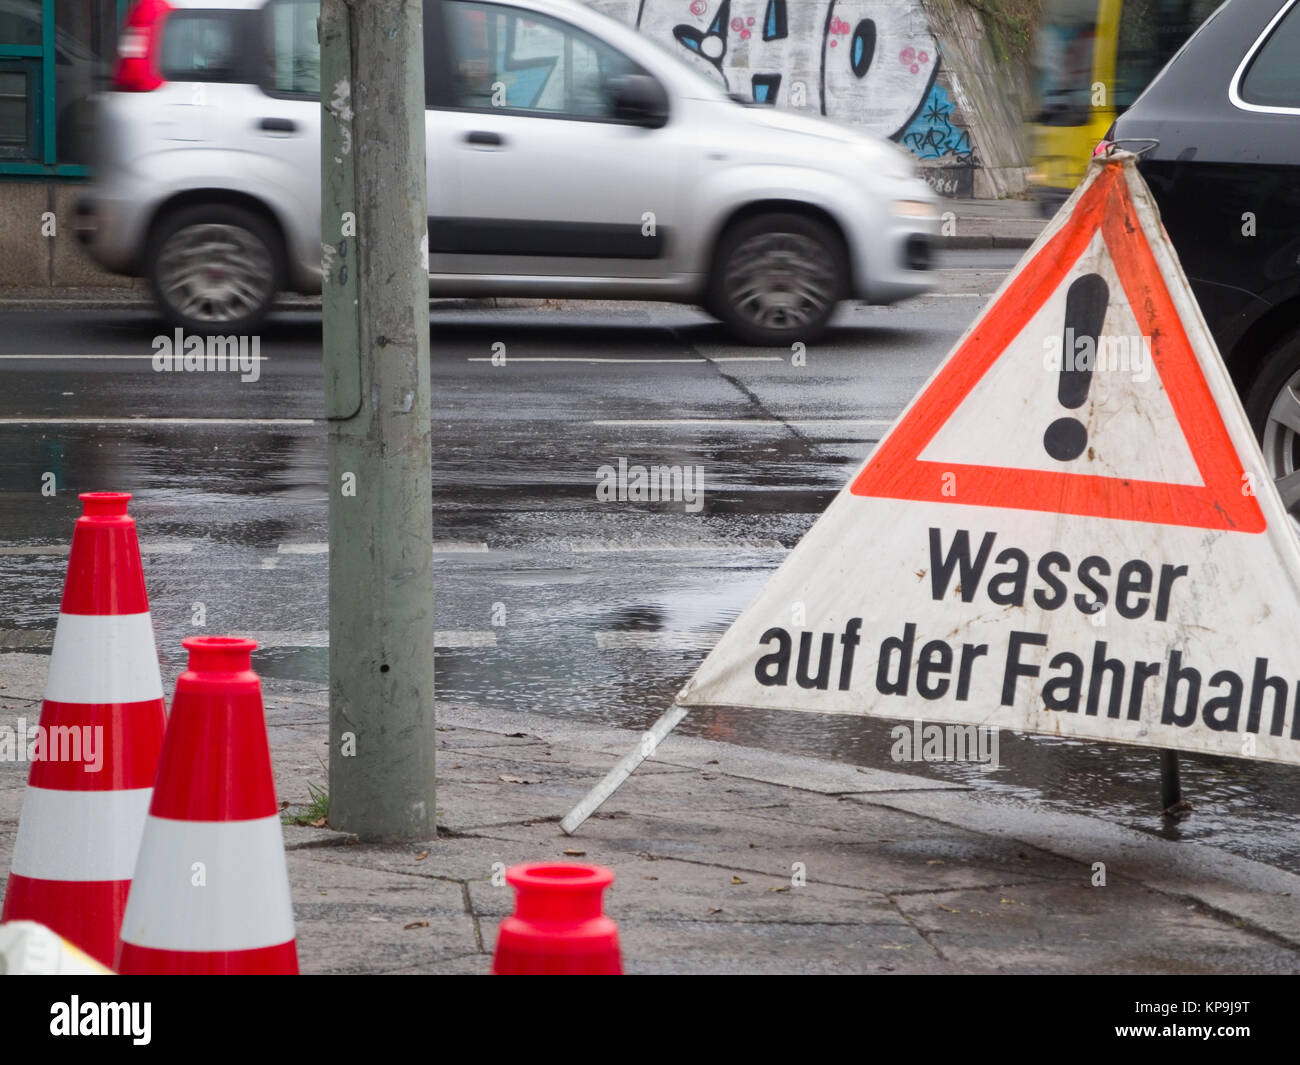 Detail-Ansicht einer regennassen Straßenkreuzung mit Personsnkraftfahrzeug in Berlin mit aufgestellten Absperrungen und der Aufschrift 'Wasser auf der Fahrbahn' Stock Photo